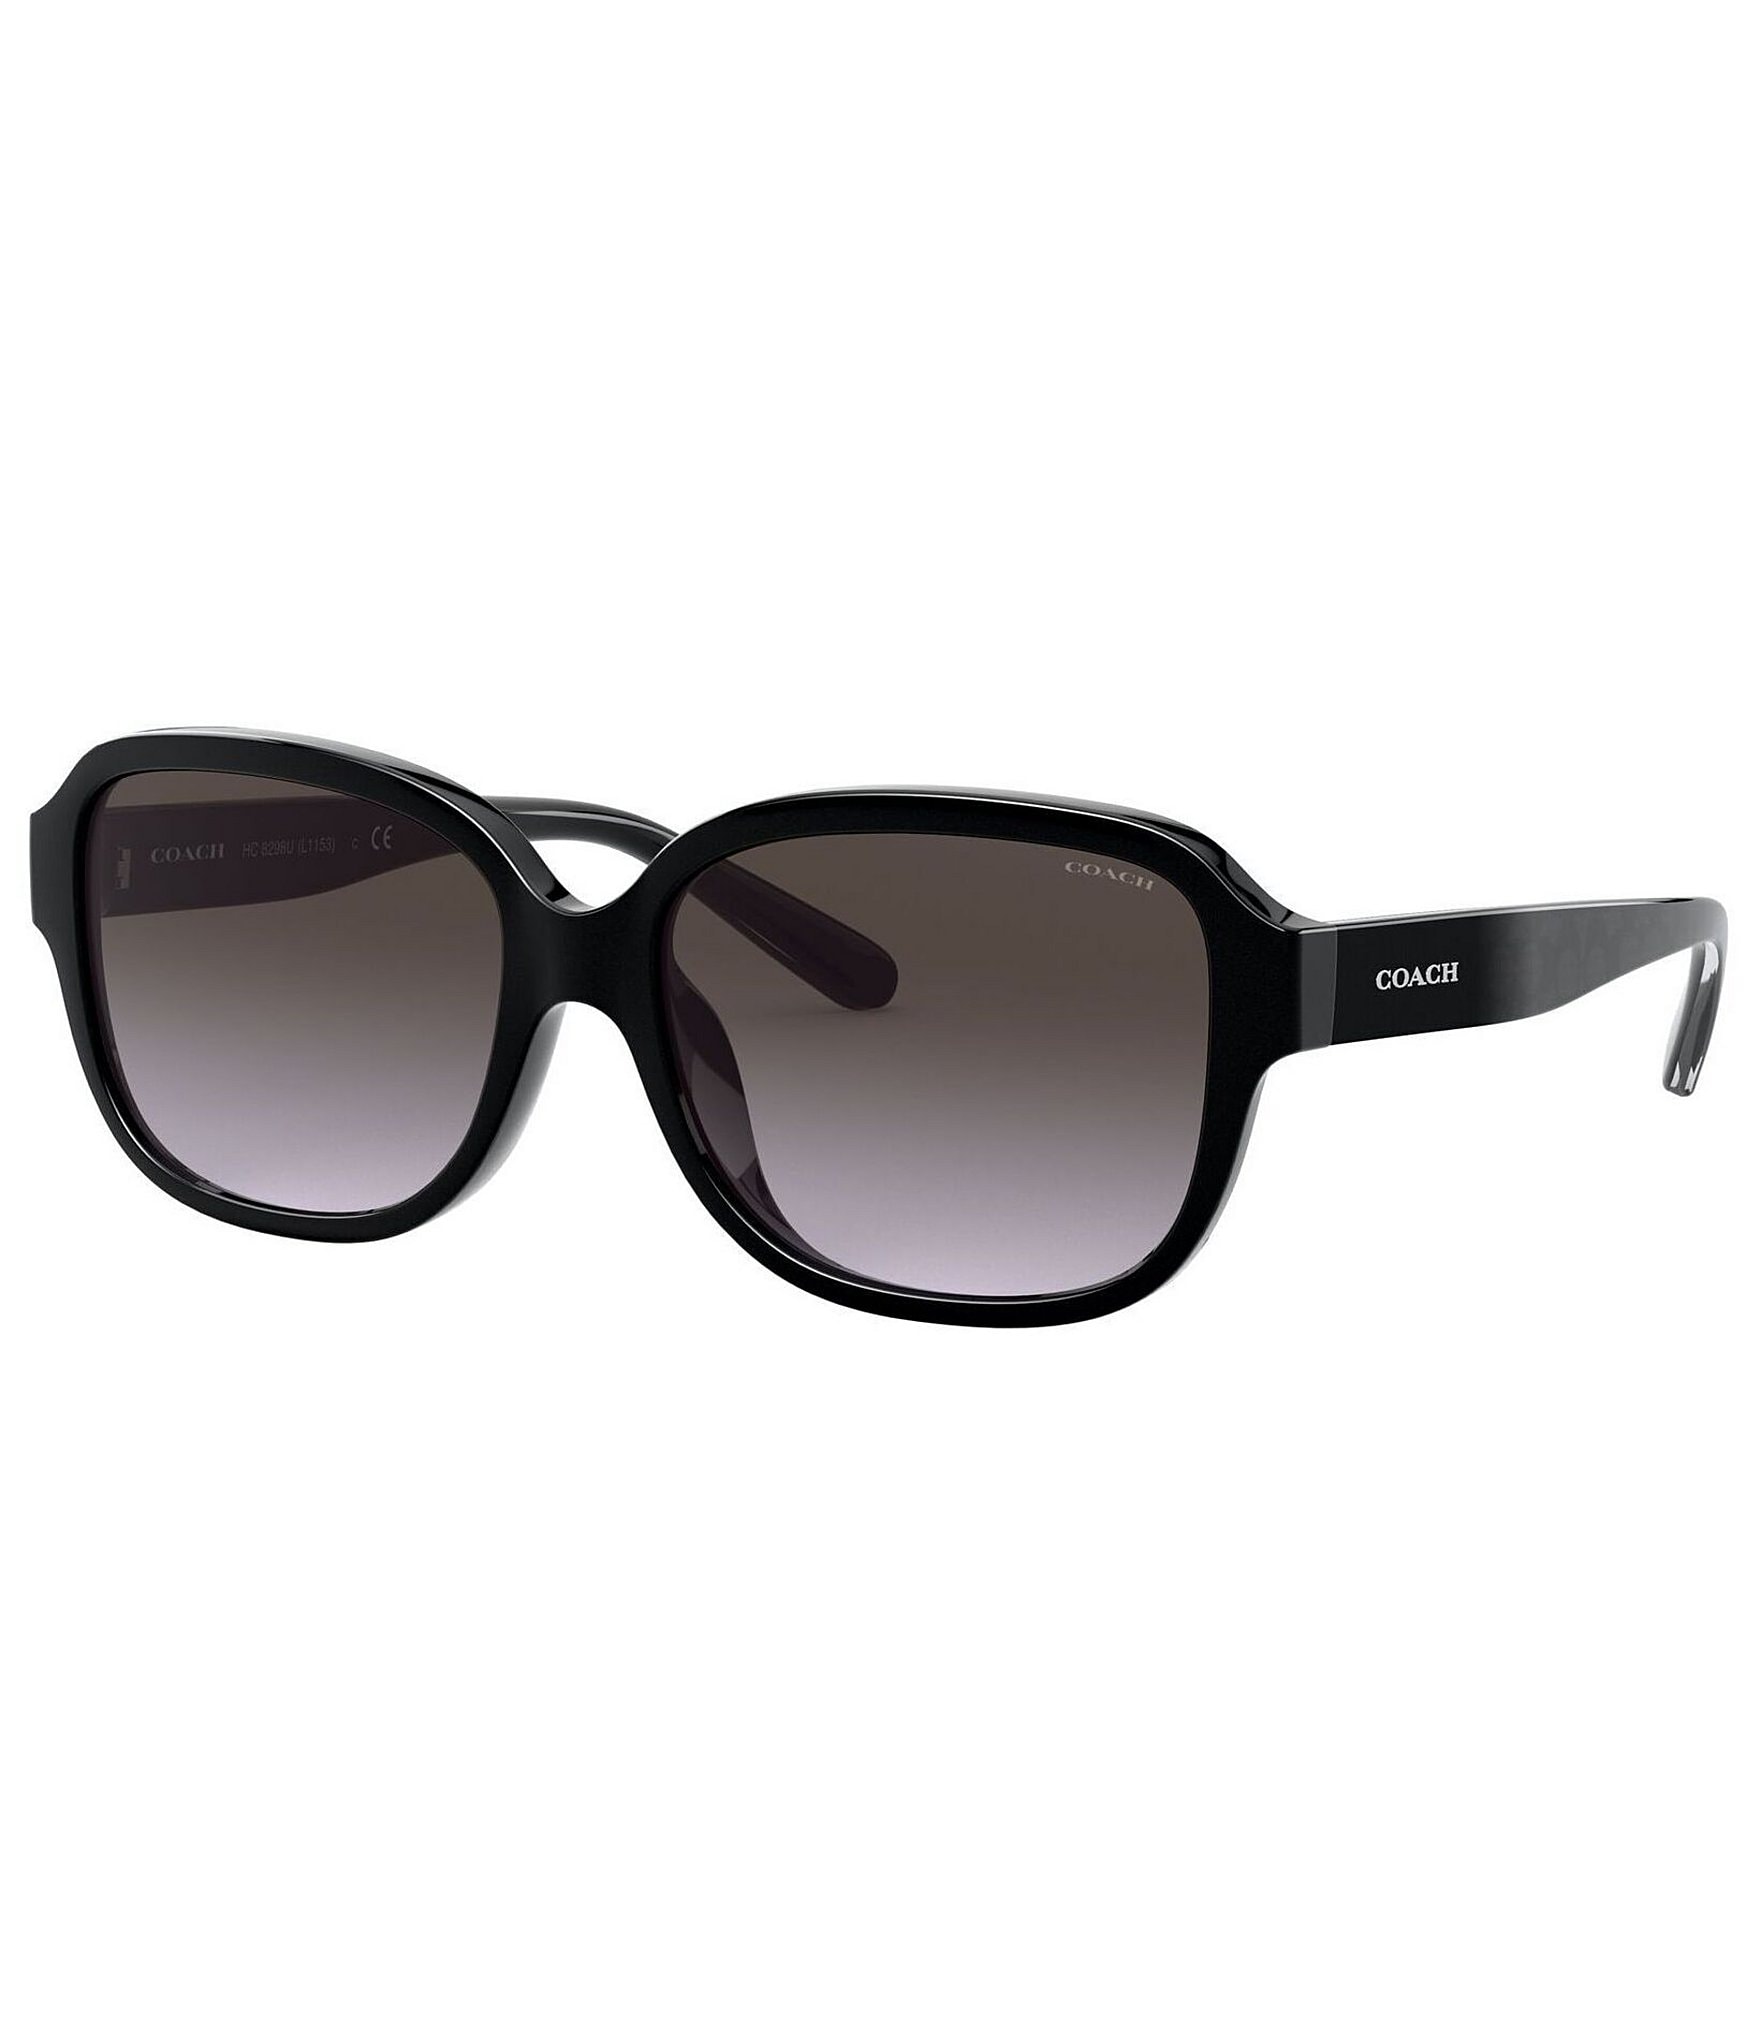 COACH Women's Rectangular 57mm Sunglasses | Dillard's